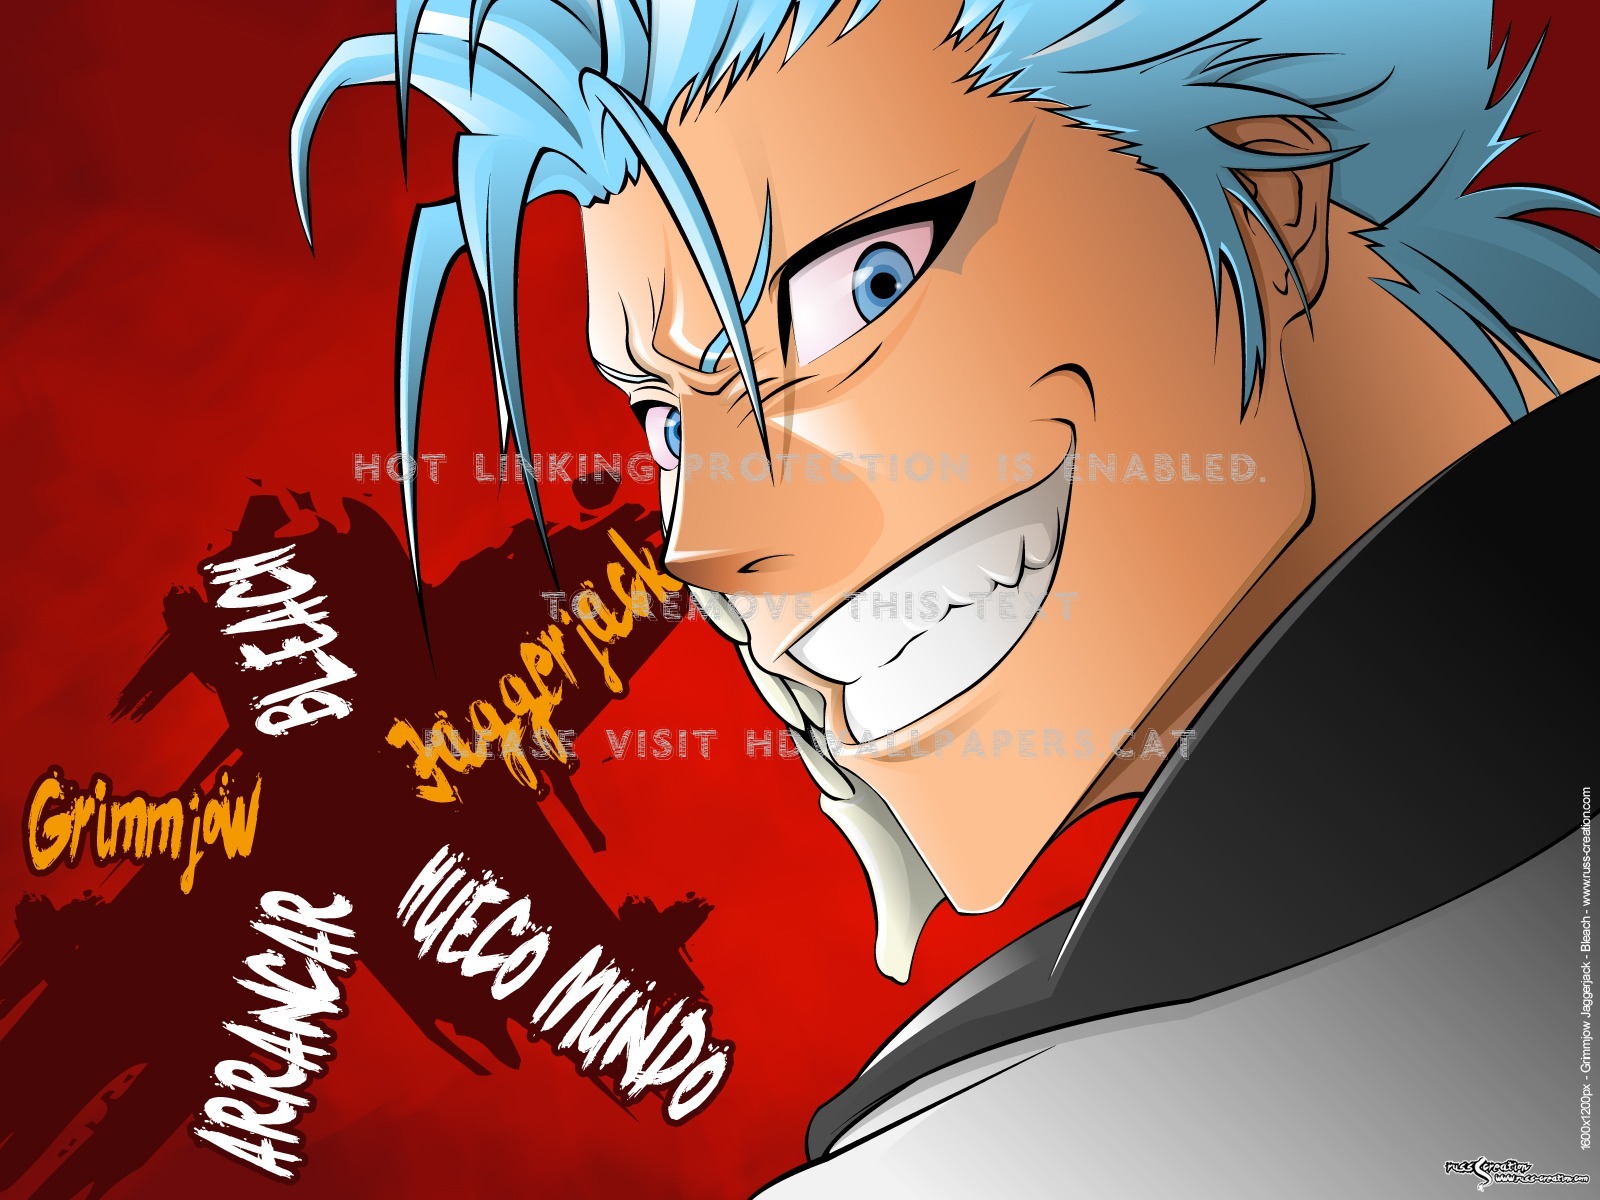 Grimmjow Jaegerjaquez Blue Hair Six Espada - Anime Character Evil Smiling - HD Wallpaper 